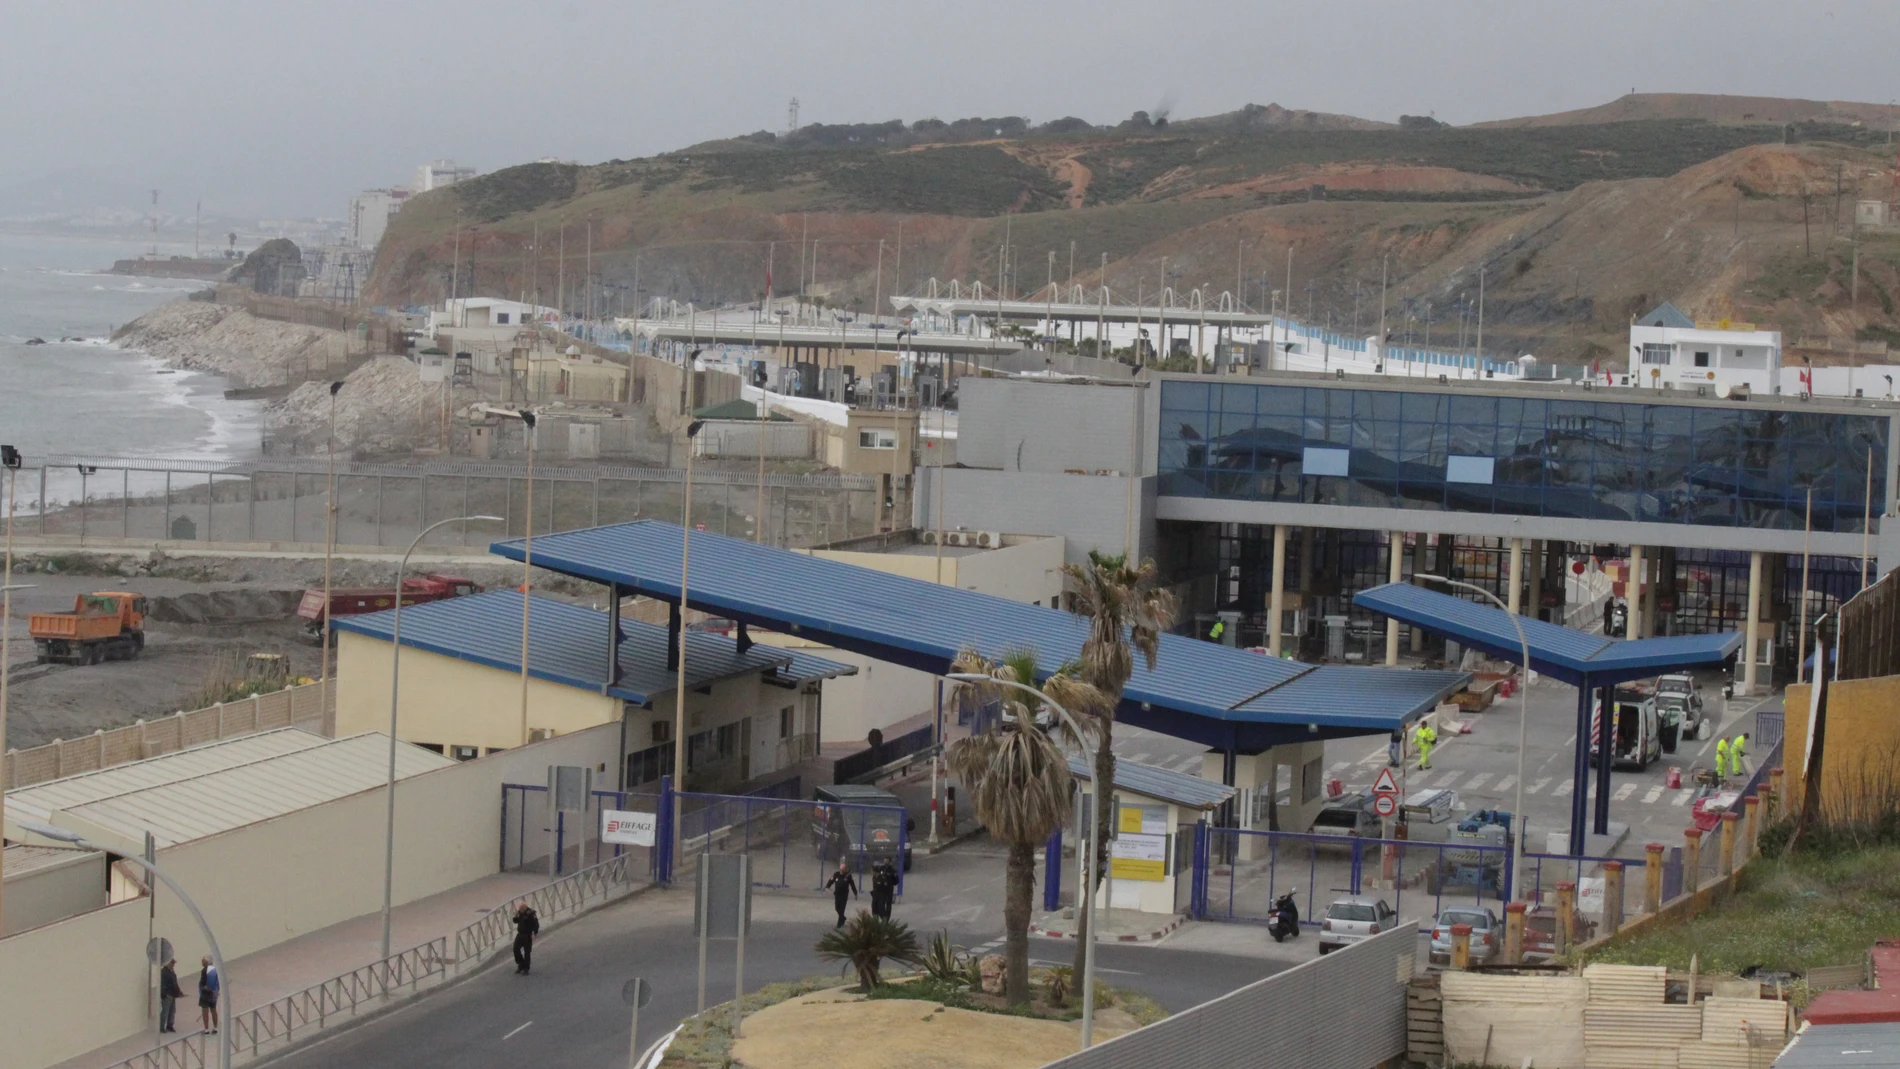 La frontera del Tarajal que separa Ceuta de Marruecos se está acondicionando y preparando en estos últimos días para su reapertura al paso de personas y vehículos, después de permanecer cerrada desde el 13 de marzo del 2020 a causa de la pandemia del coronavirus